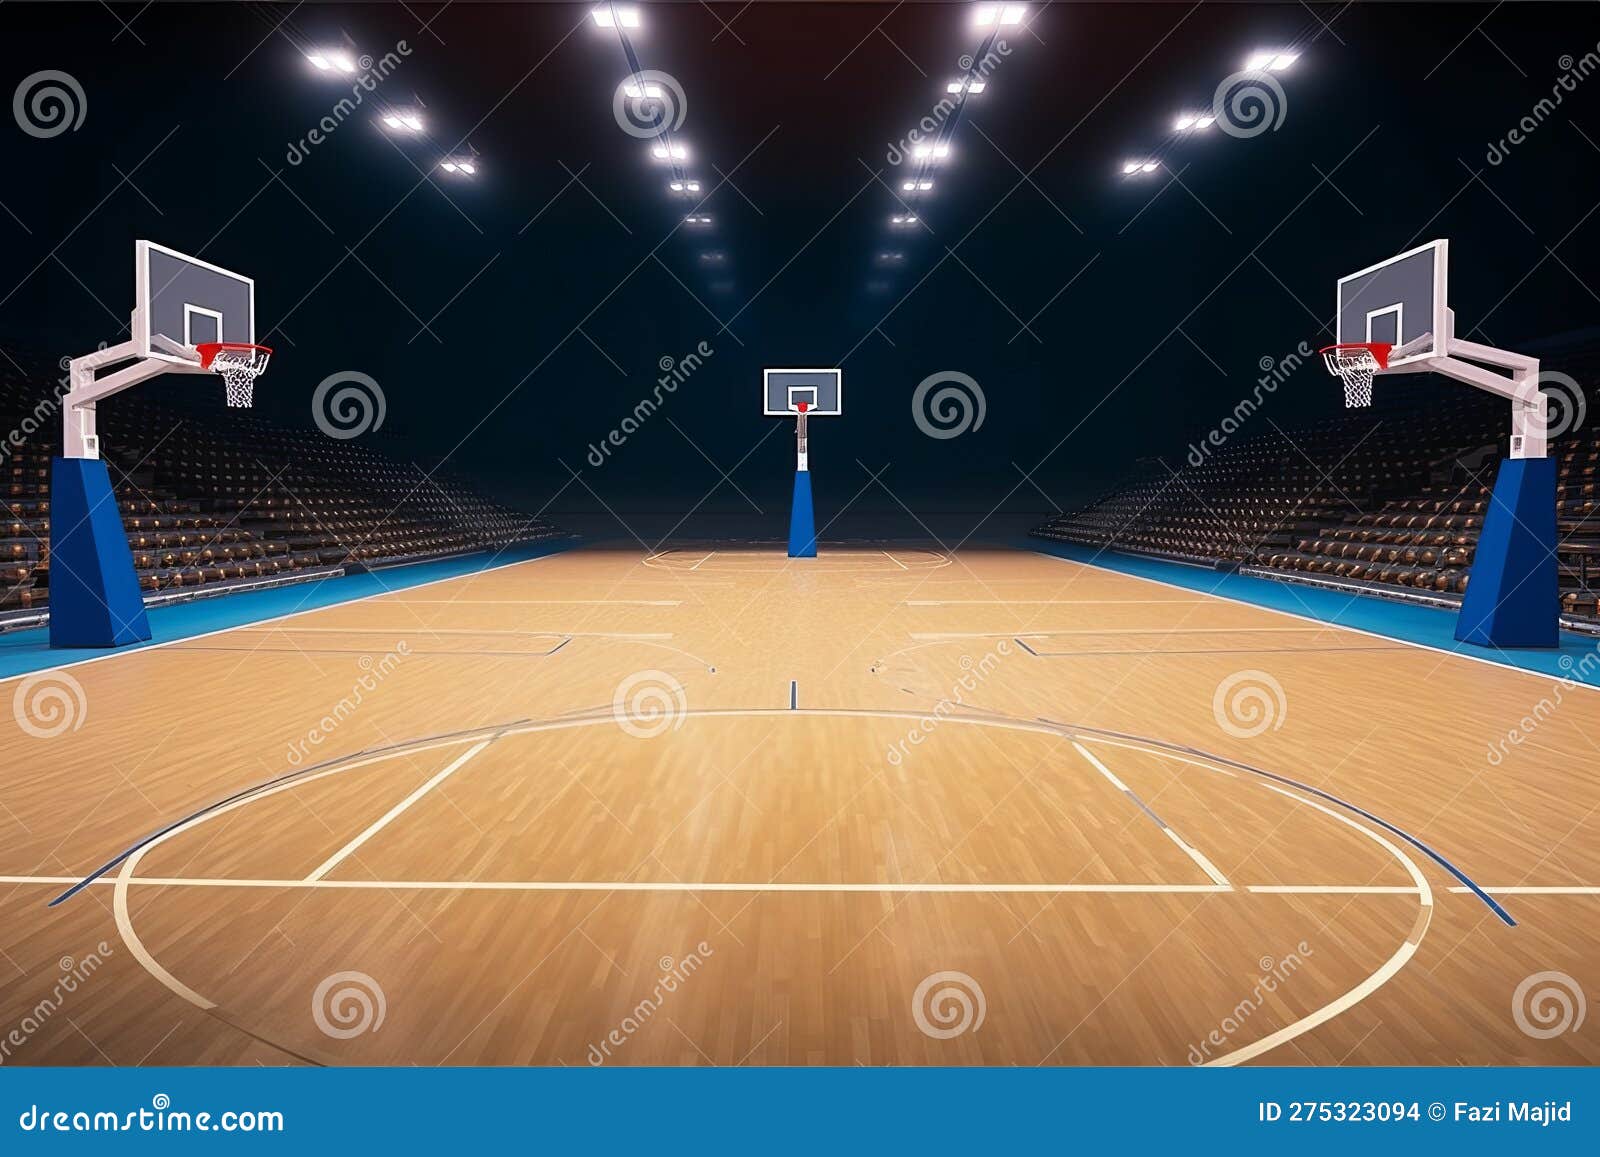 Terrain de basket ball : 82 528 images, photos de stock, objets 3D et  images vectorielles